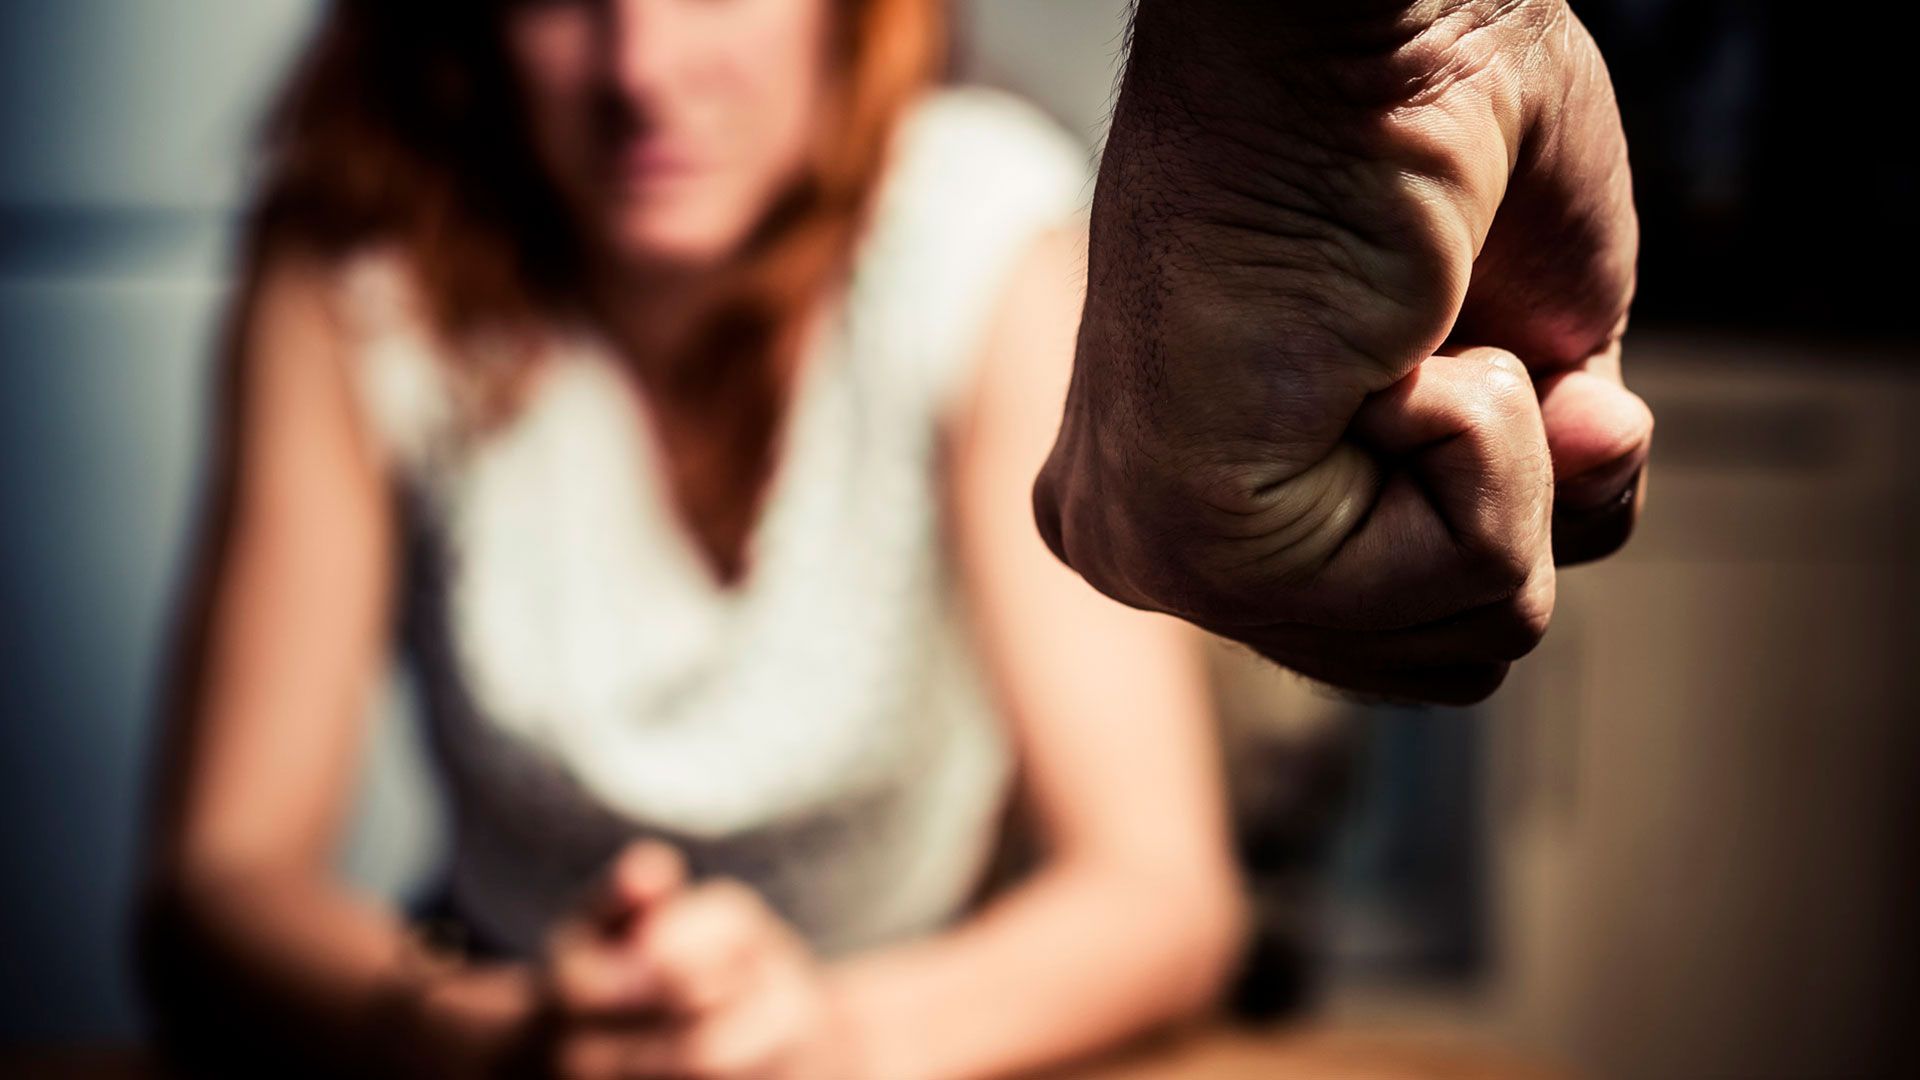 El confinamiento ha dado pie a mayor violencia hacia las mujeres, pues están encerradas con potenciales agresores y están disminuidas sus redes de apoyo por restricciones de movilidad, según las OSCs (Shutterstock)